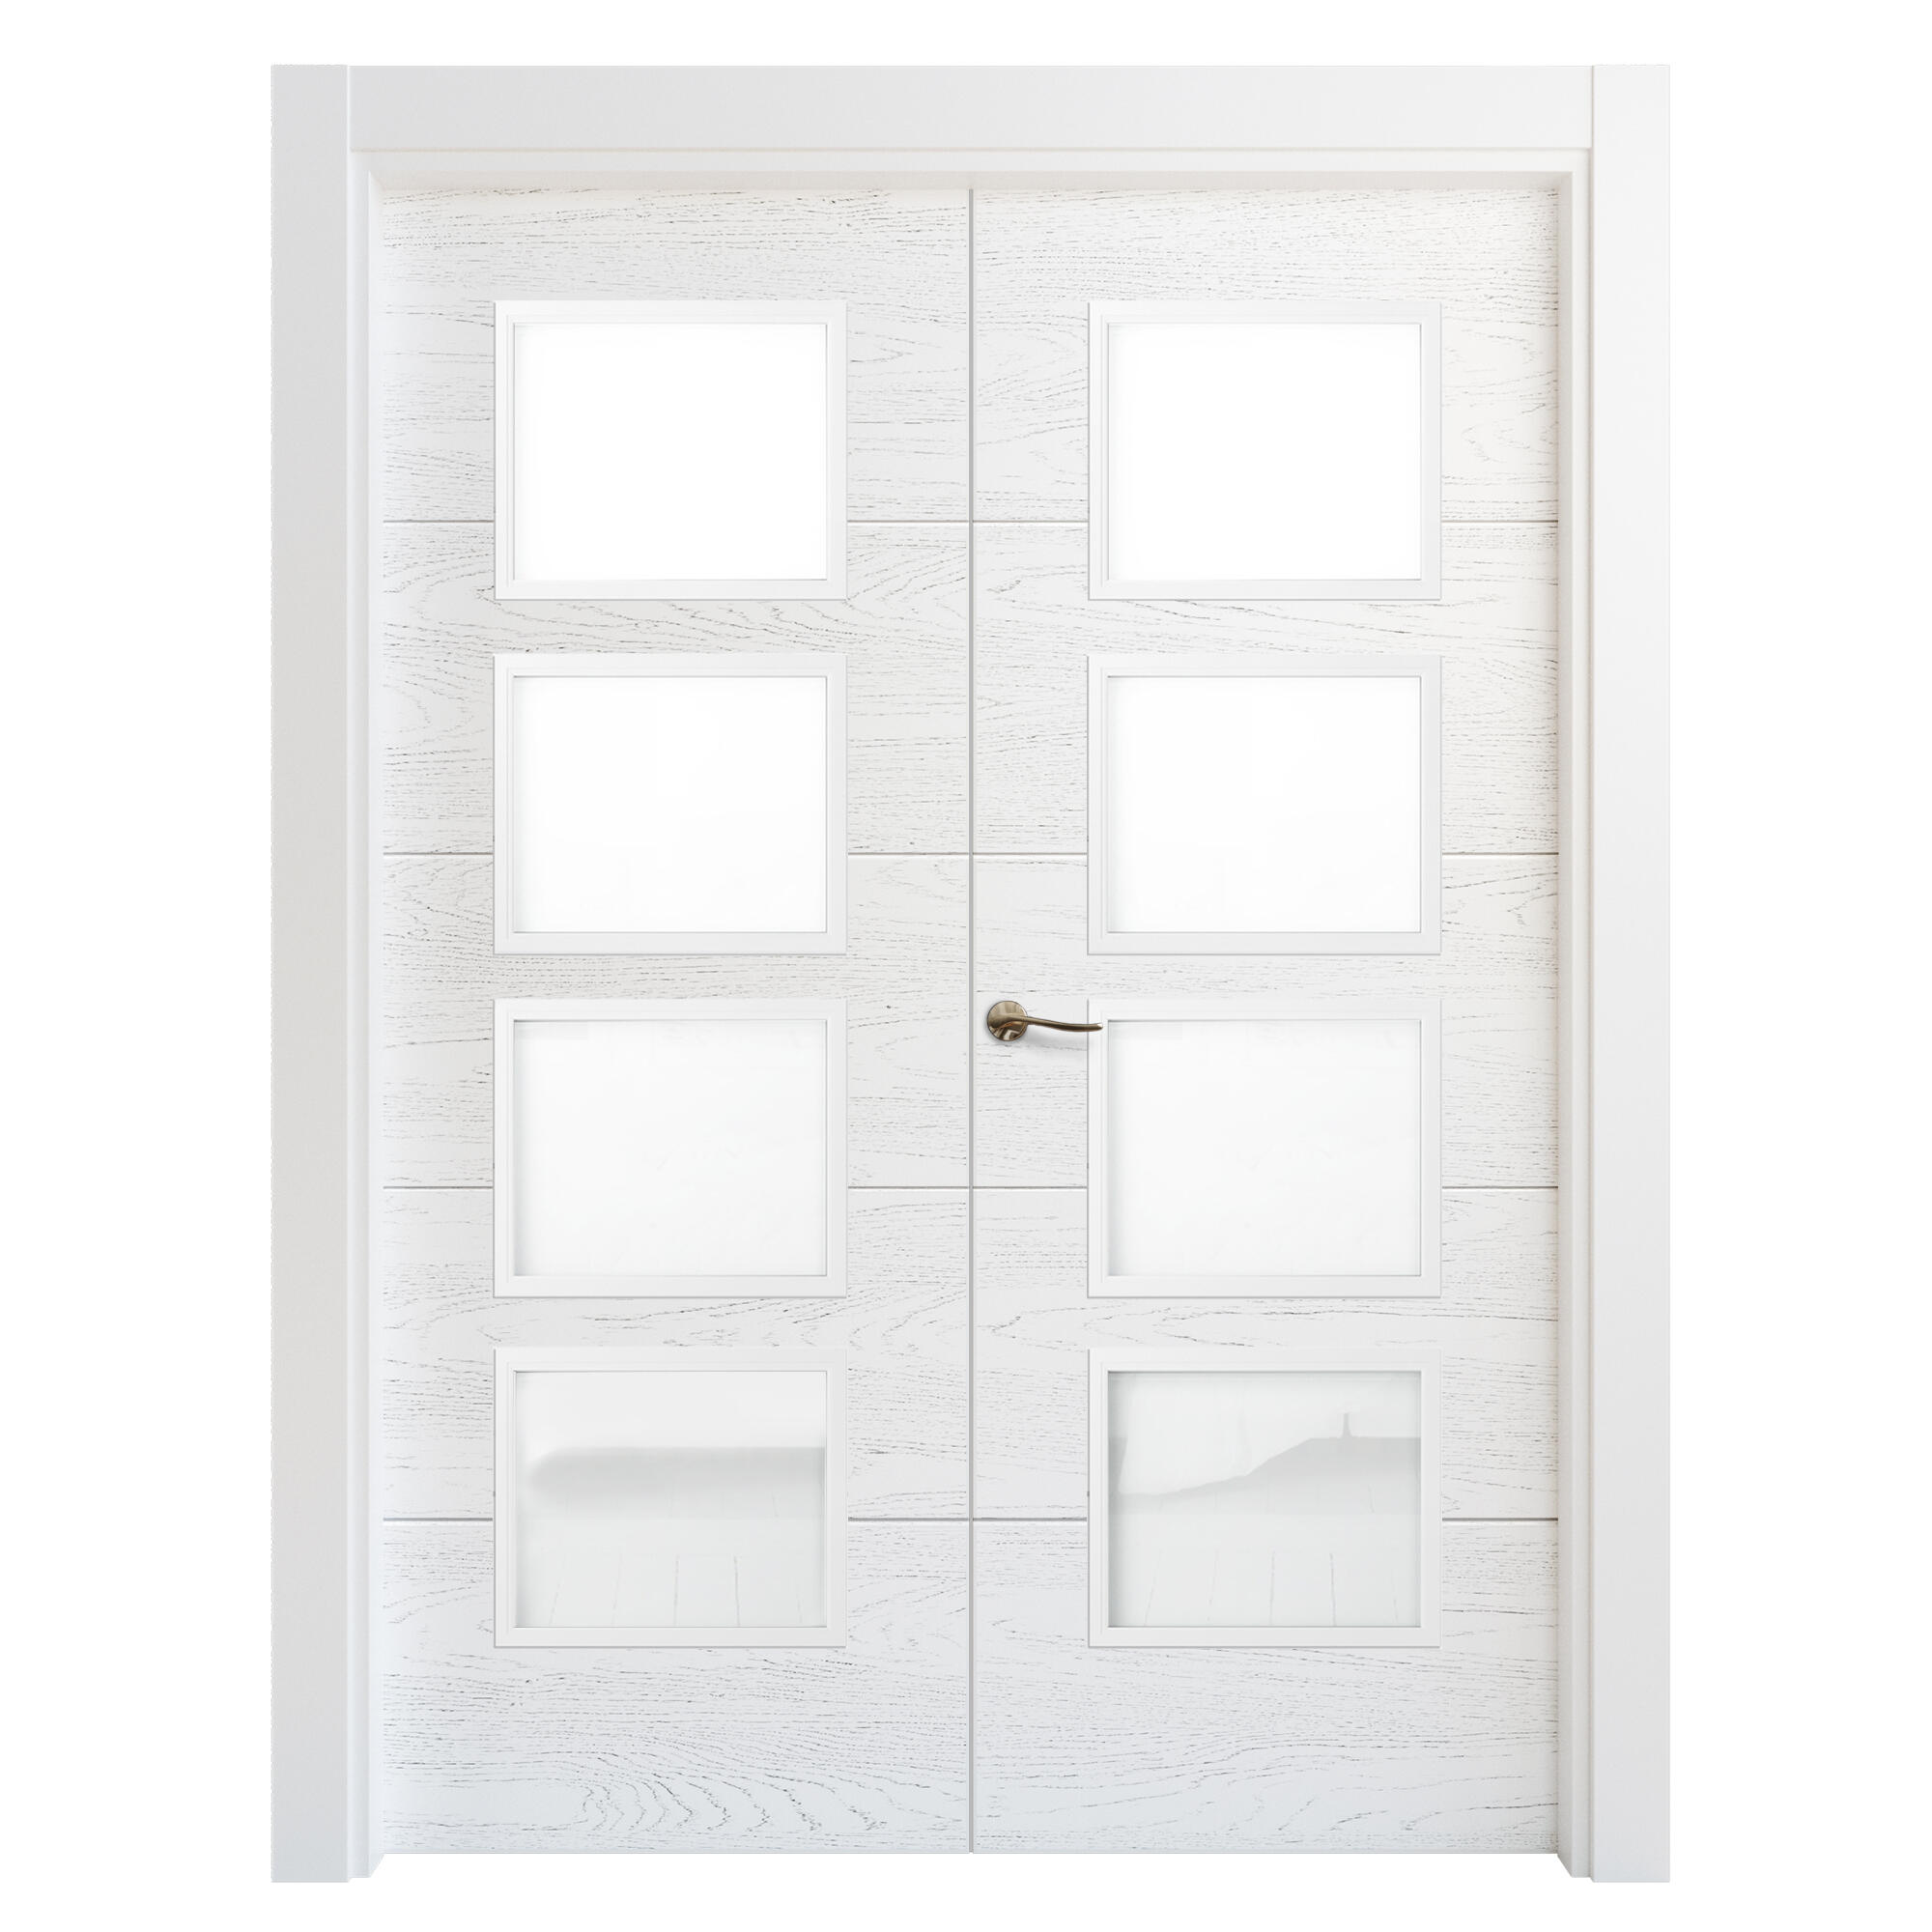 Puerta doble acristalada lucerna premium blanca i 7x125 cm